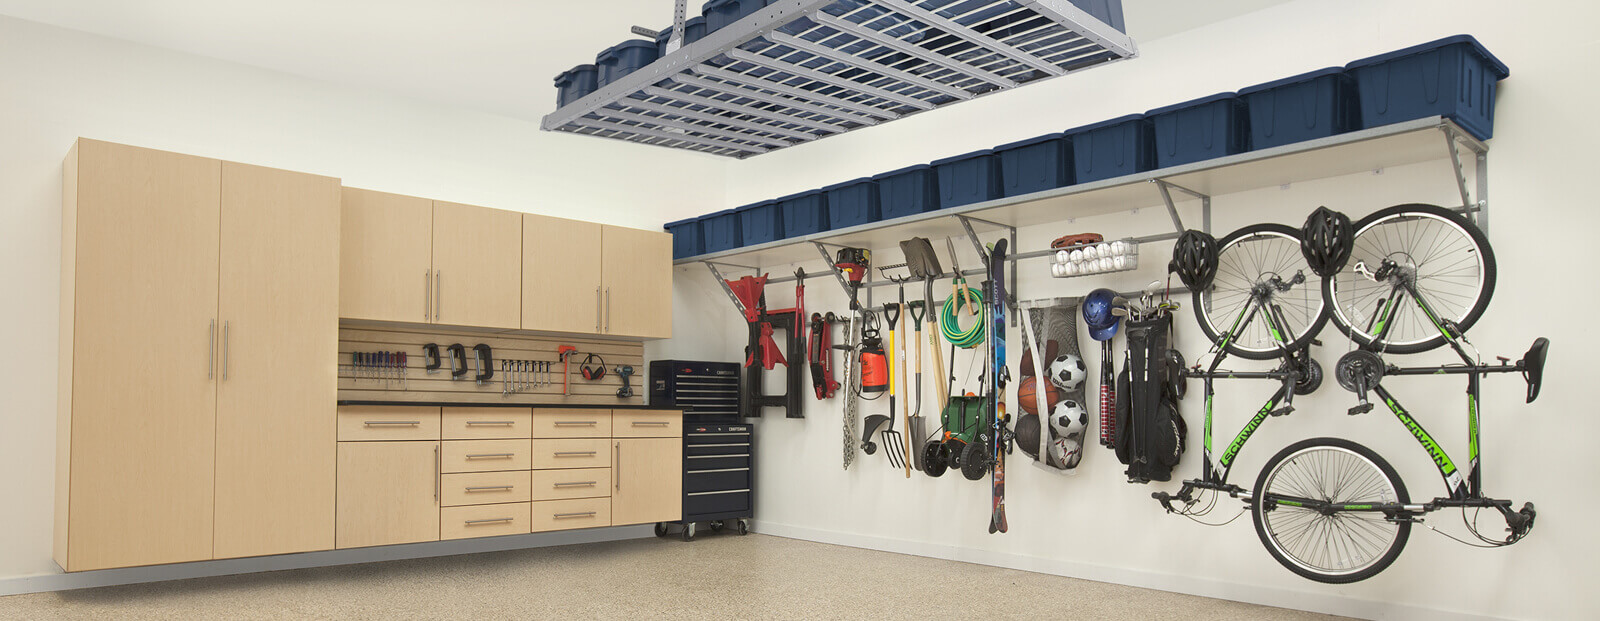 Garage Organization, Garage Storage Solutions, Garage Flooring and More! - Garage  Organization Atlanta